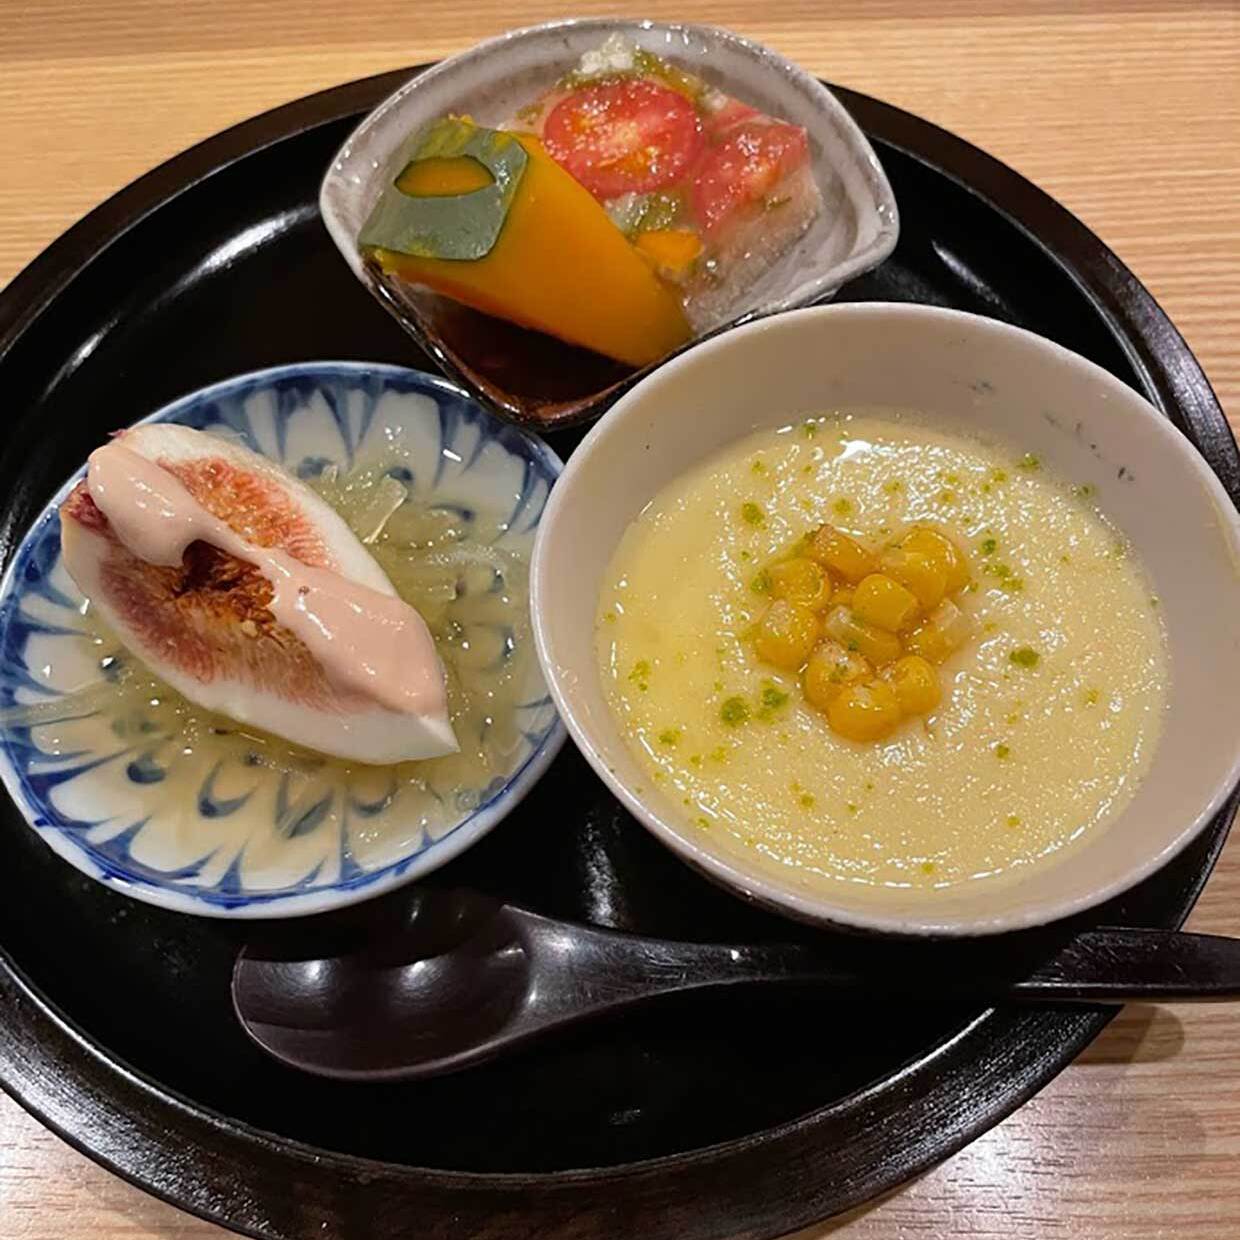 大阪・島之内の和食『酒菜屋 なないろ』２つめのお通しのトウモロコシの茶碗蒸し、イチヂクと素麺南瓜、鱧の子と野菜ゼリー酢。